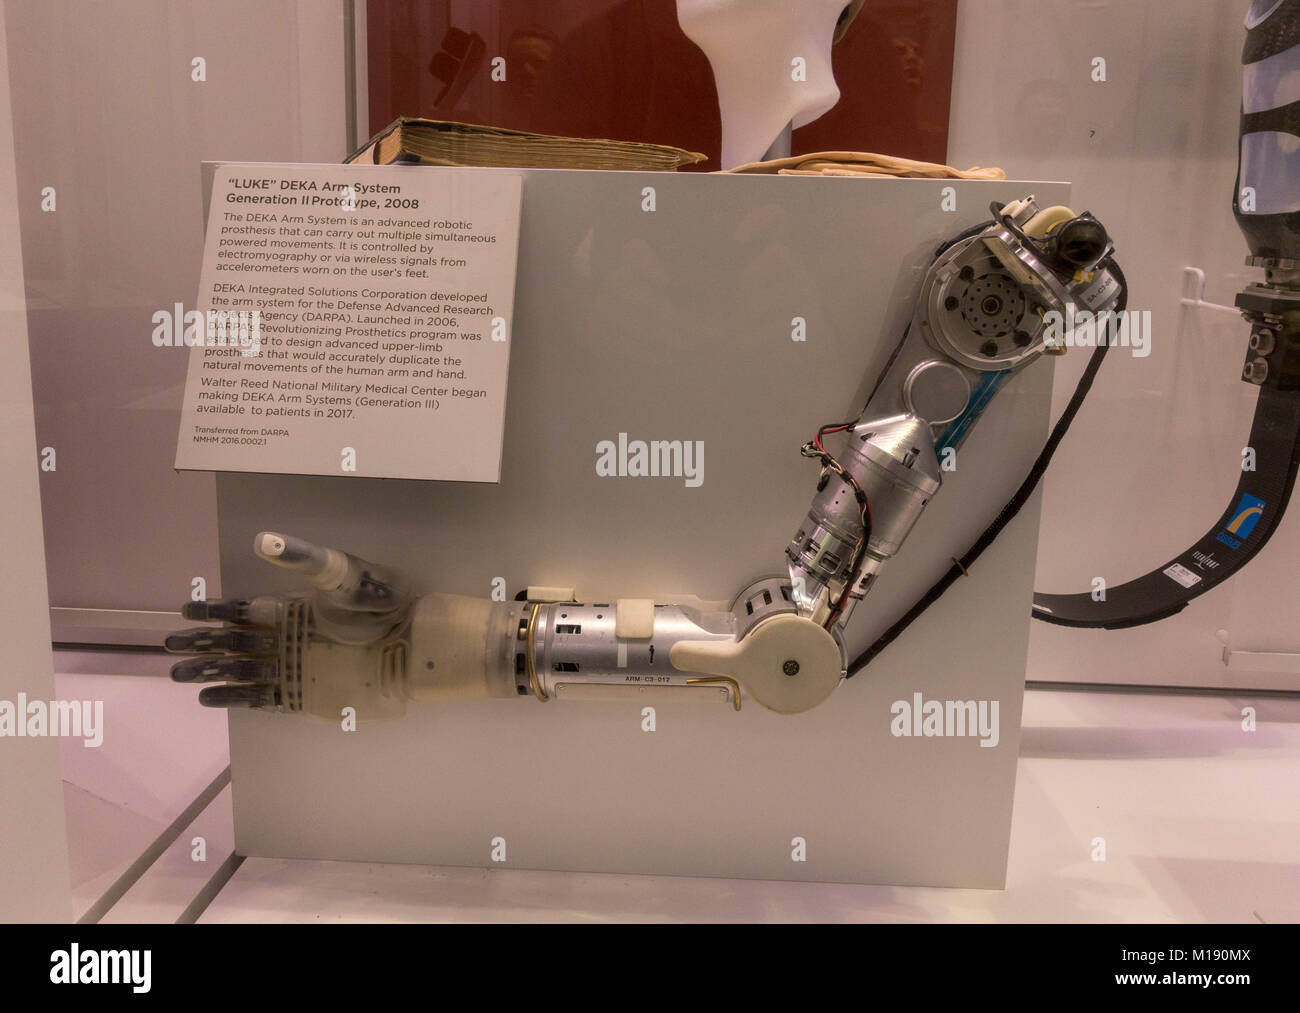 Ein 'Lukas' DEKA Arm System Generation II Prototyp (2008) Auf der Anzeige im Nationalmuseum von Gesundheit und Medizin, Silver Spring, MD, USA. Stockfoto